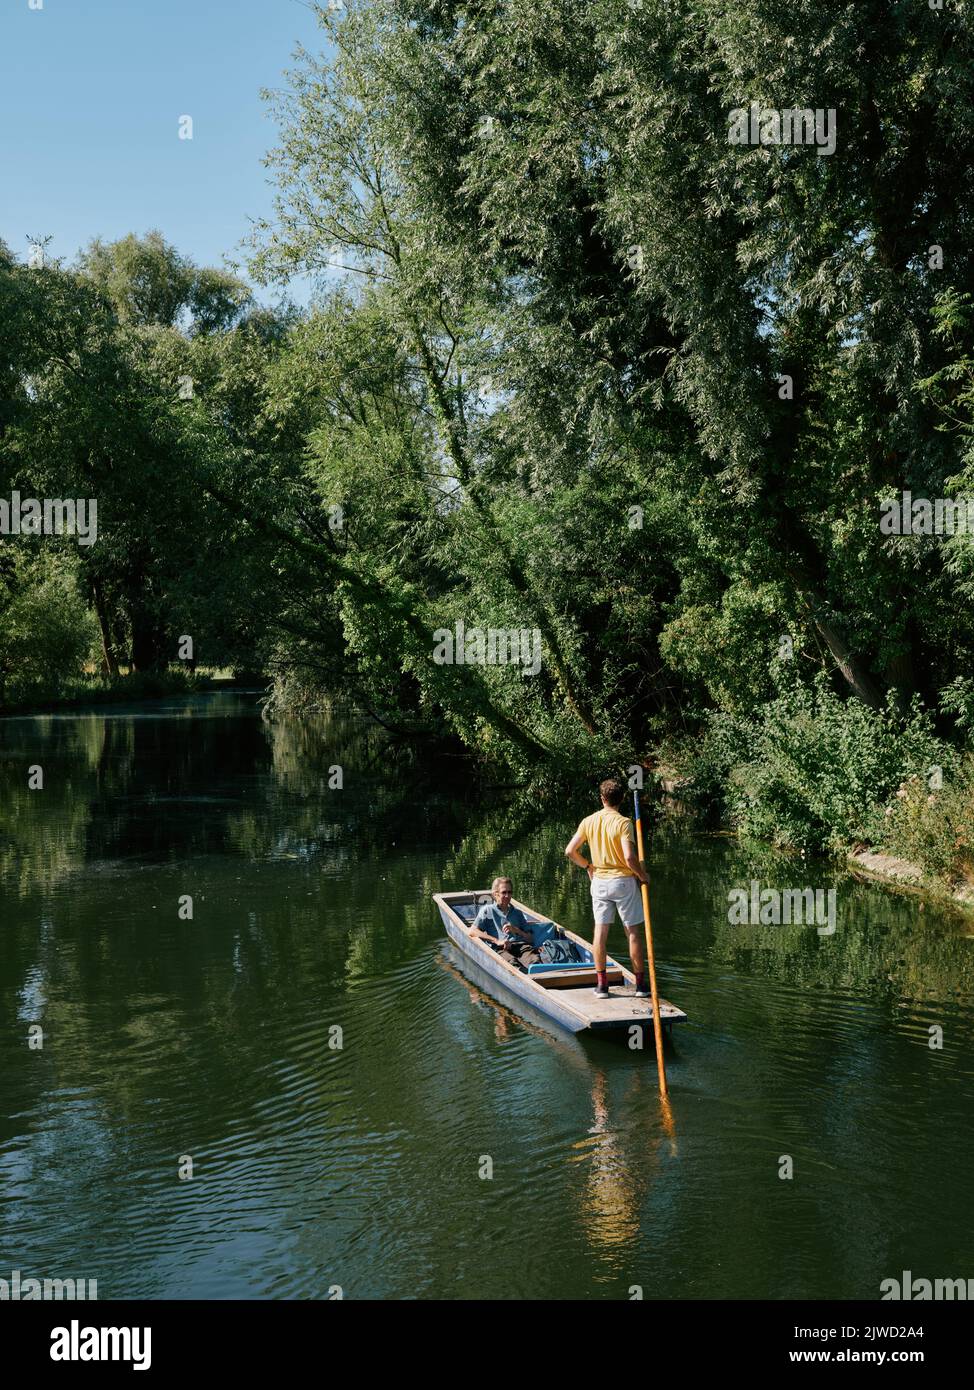 Punting le long de la rivière Cam en été à Cambridge Cambridgeshire Angleterre Royaume-Uni - campagne English punt Banque D'Images